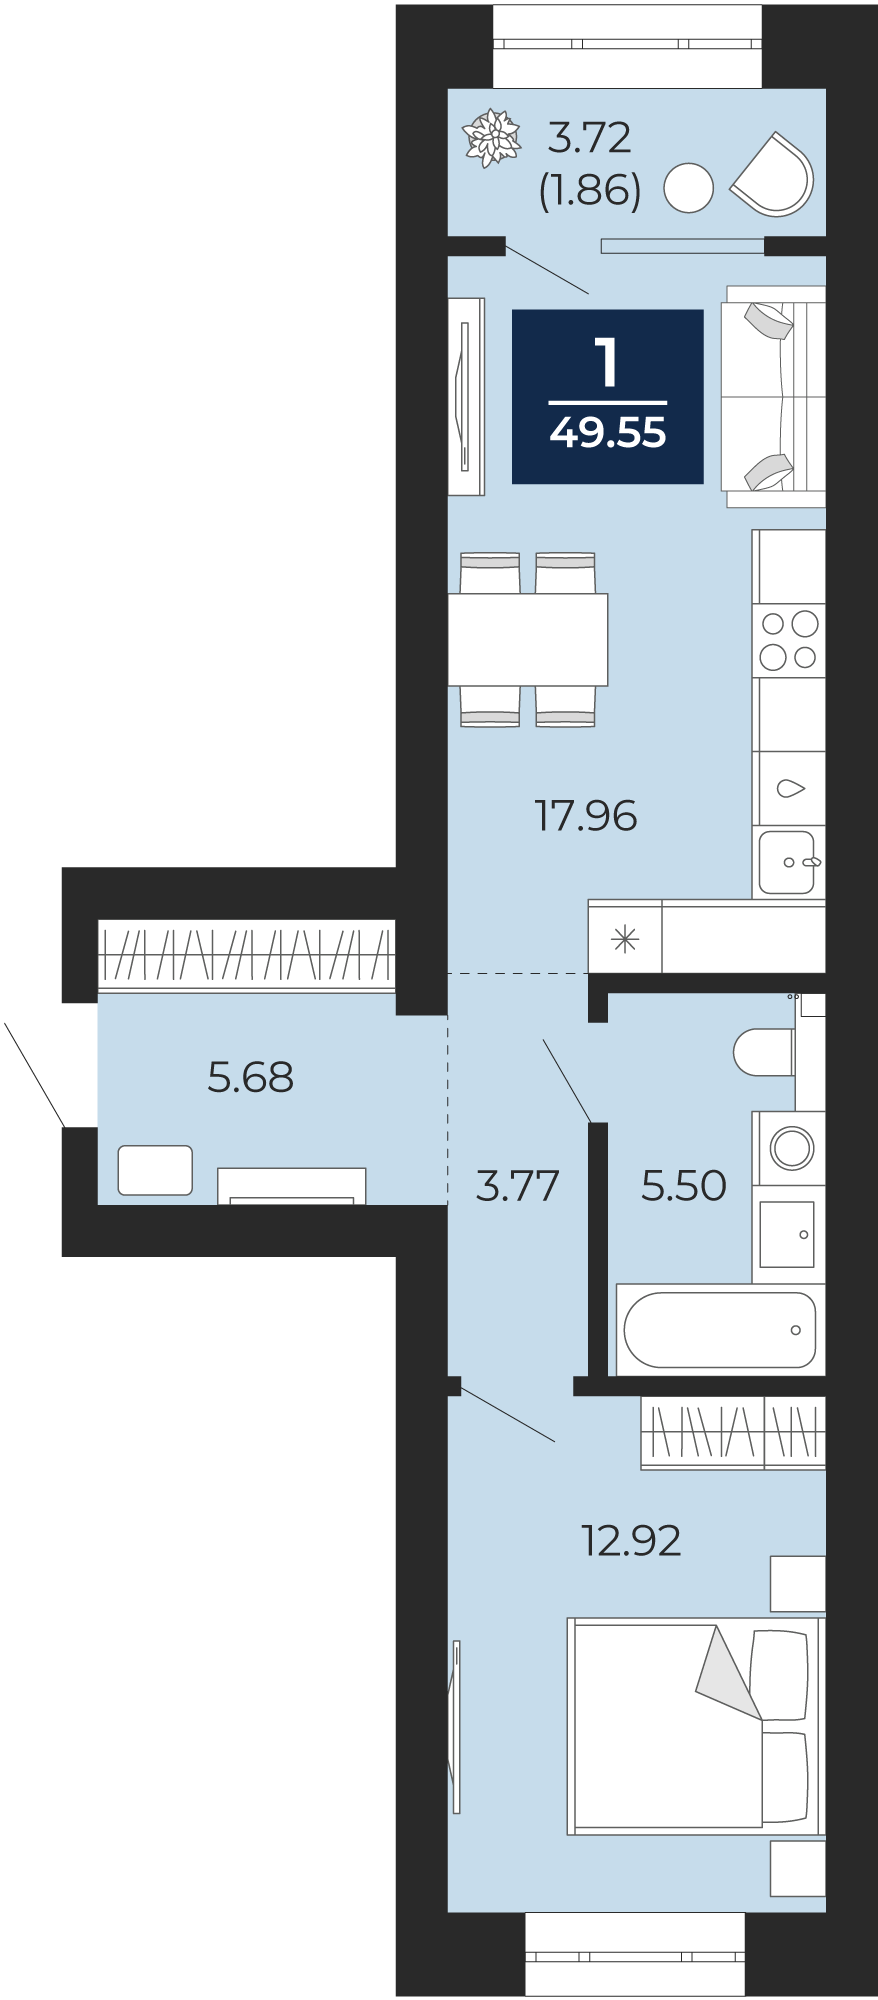 Квартира № 255, 1-комнатная, 49.55 кв. м, 10 этаж